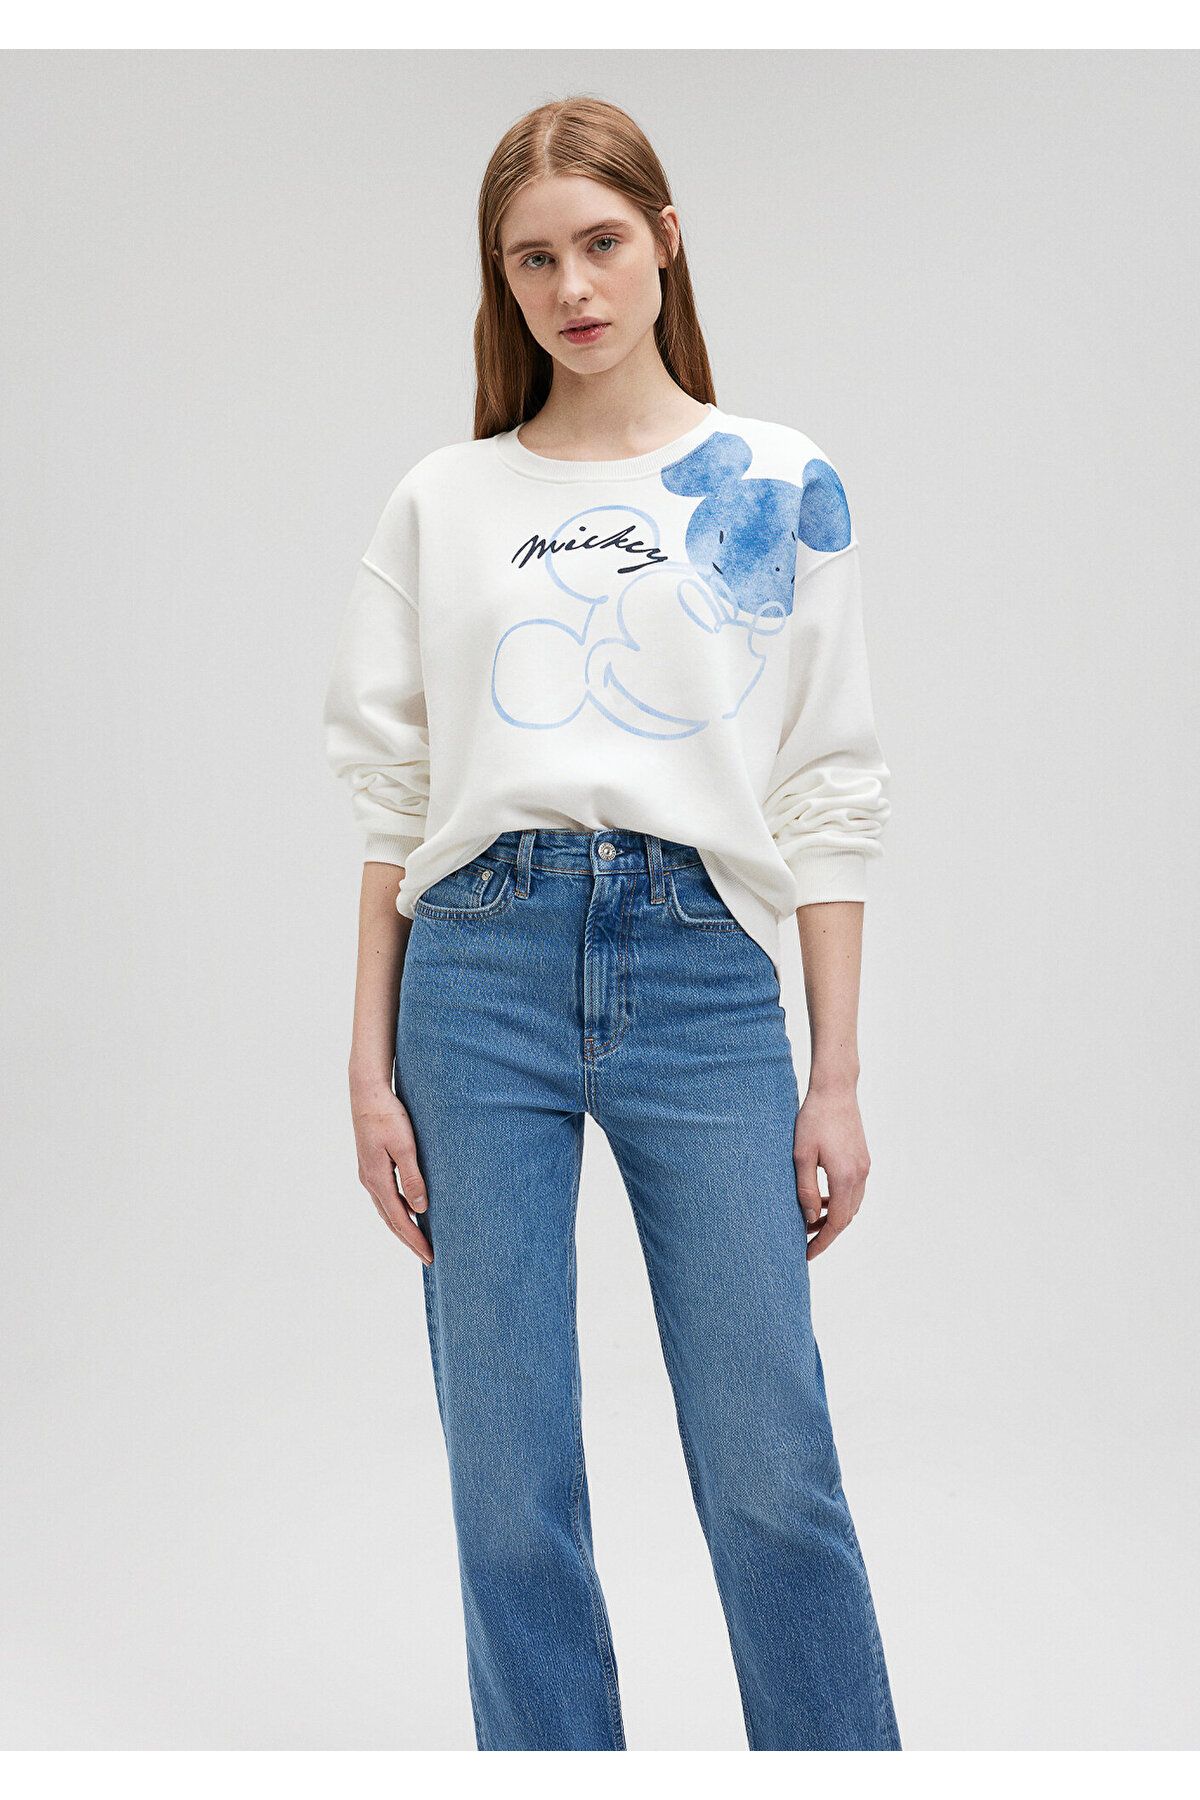 Mavi Mickey Mouse Baskılı Beyaz Sweatshirt 1S10109-80194